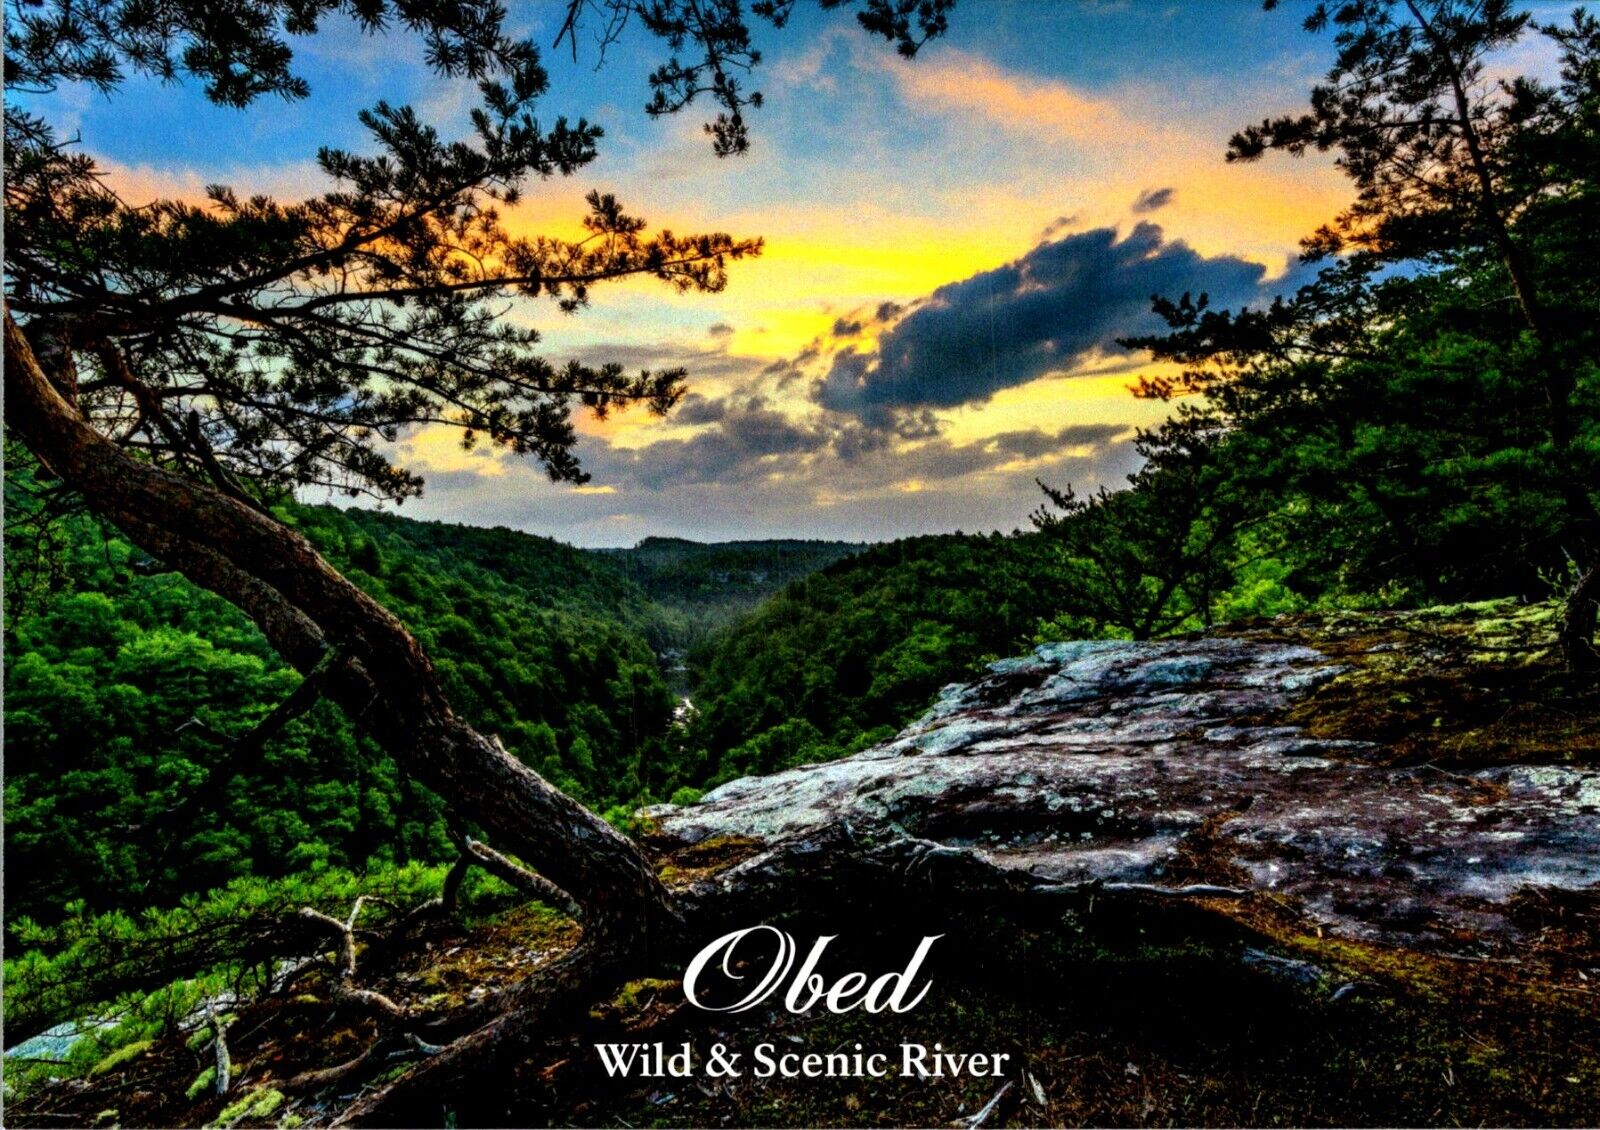 Obed Wild & Scenic River cliff edge photo postcard